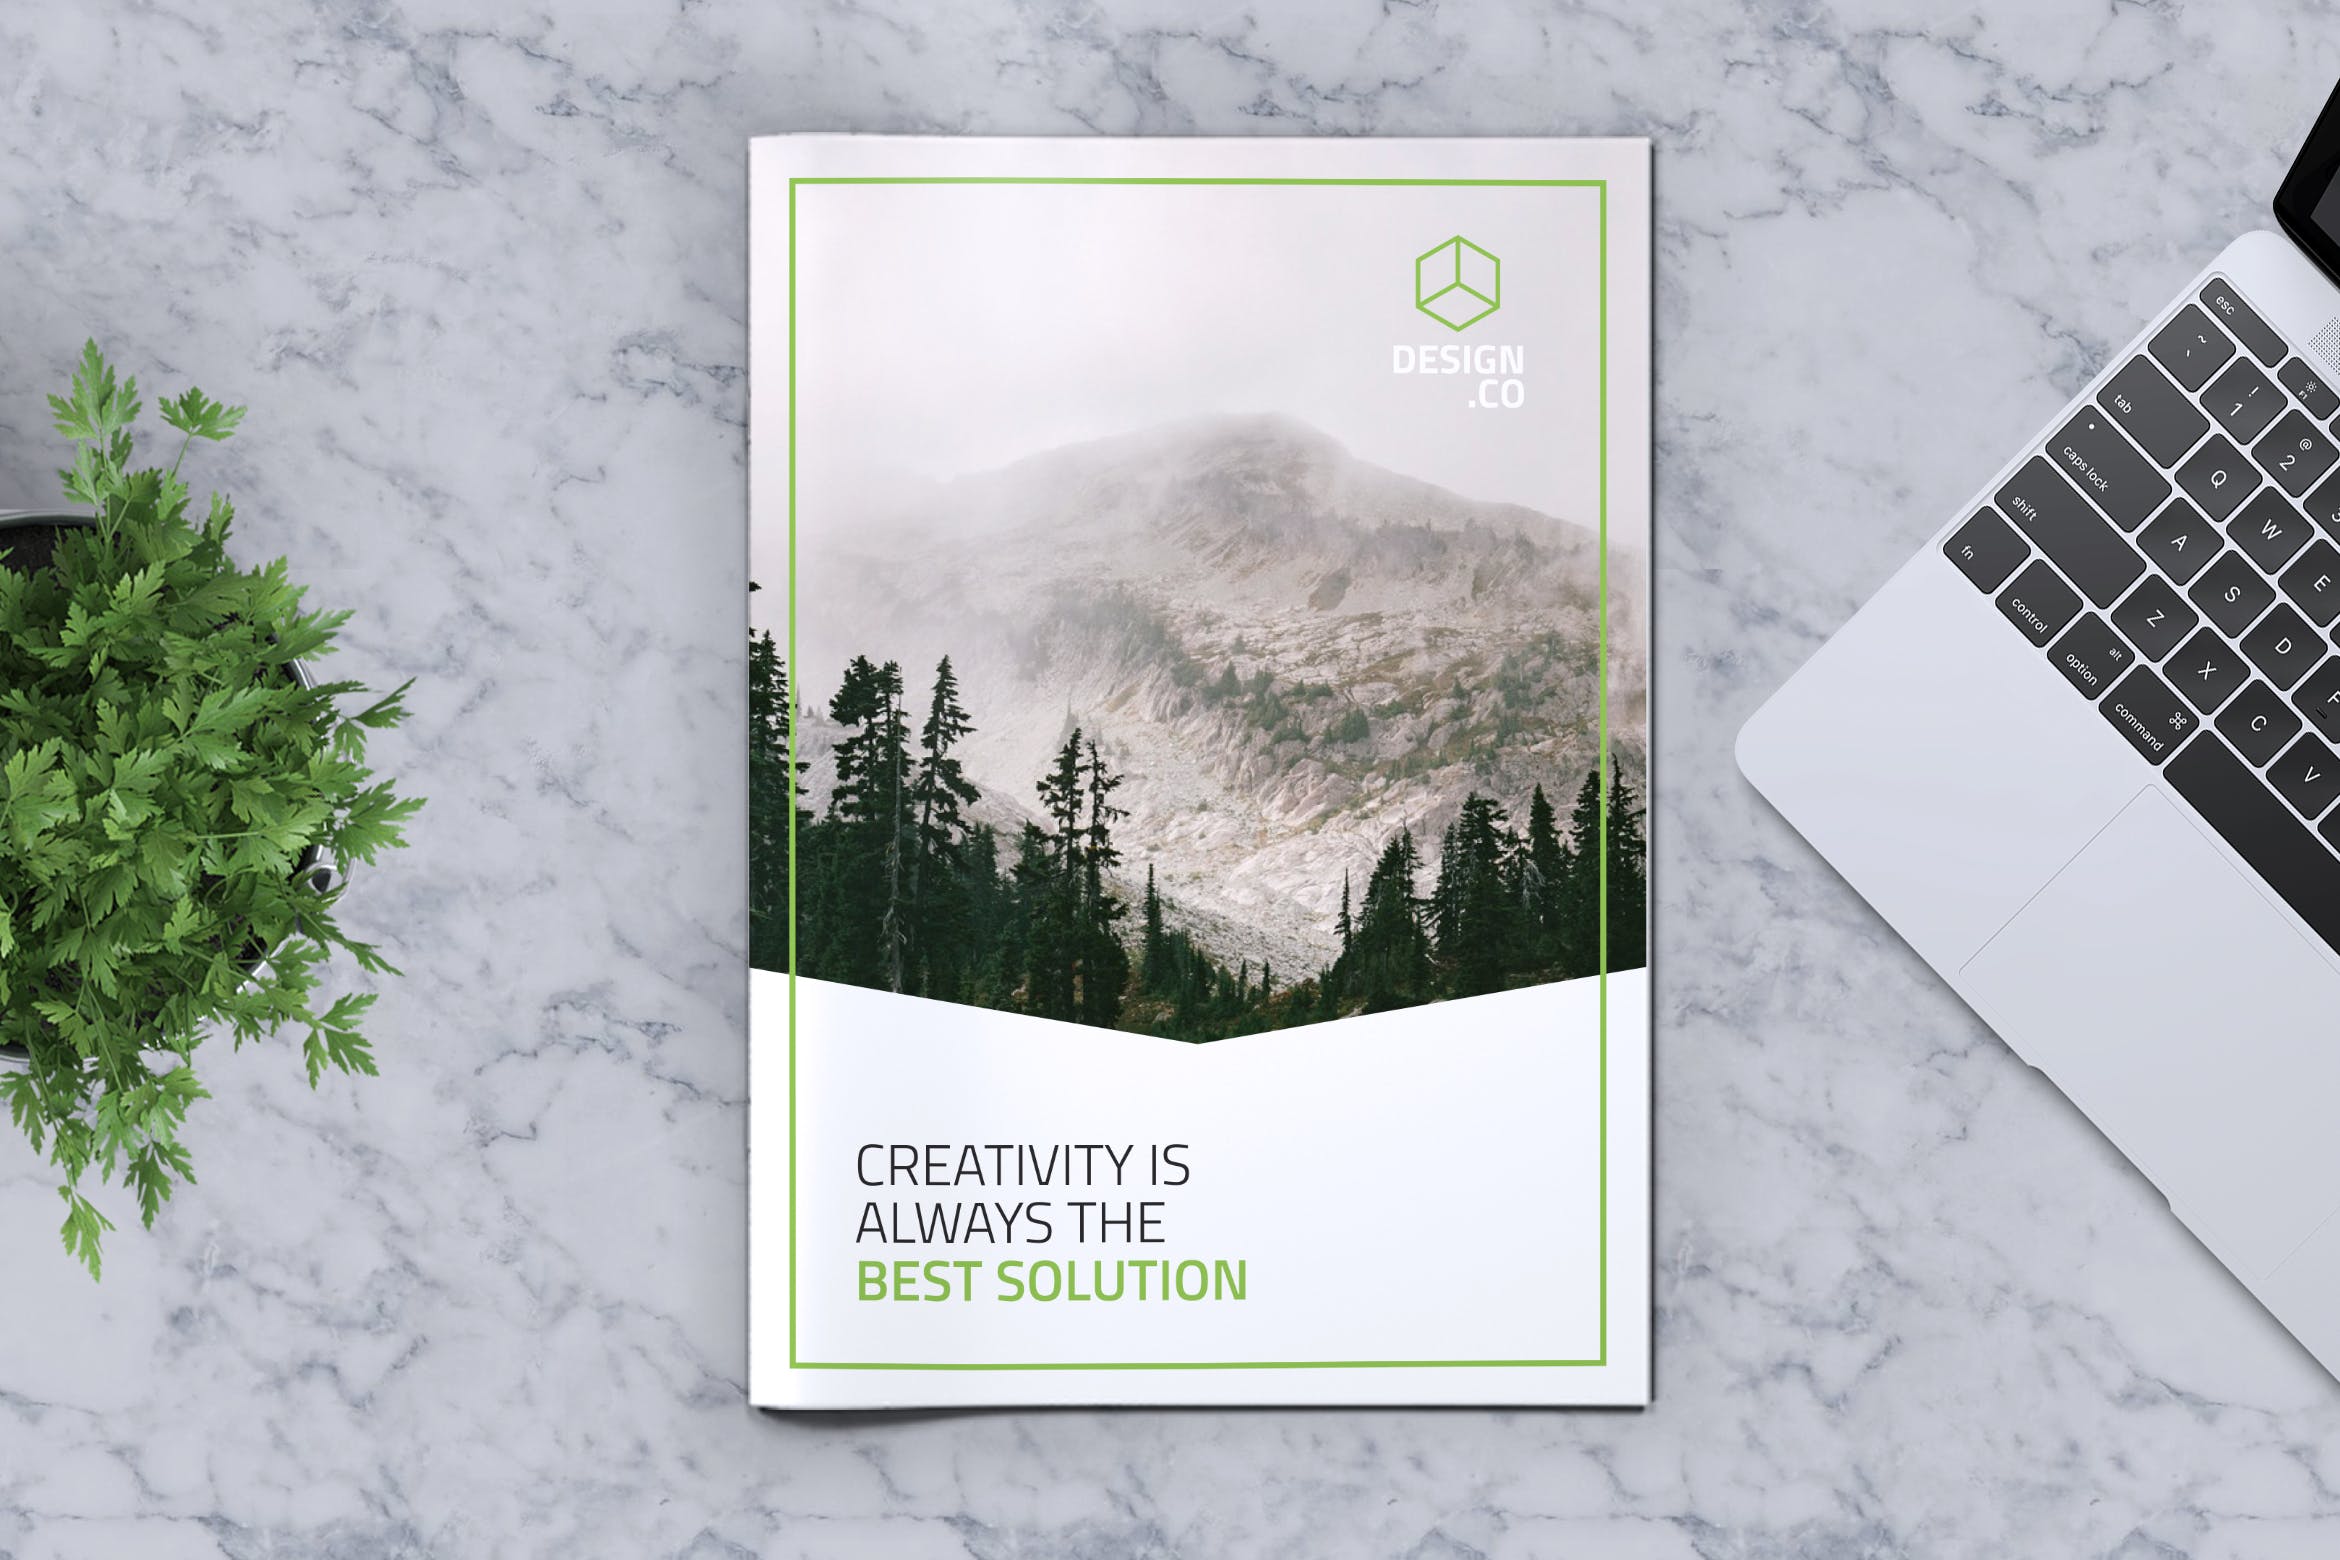 创意企业宣传册/画册设计模板v13 Creative Brochure Template Vol. 13插图